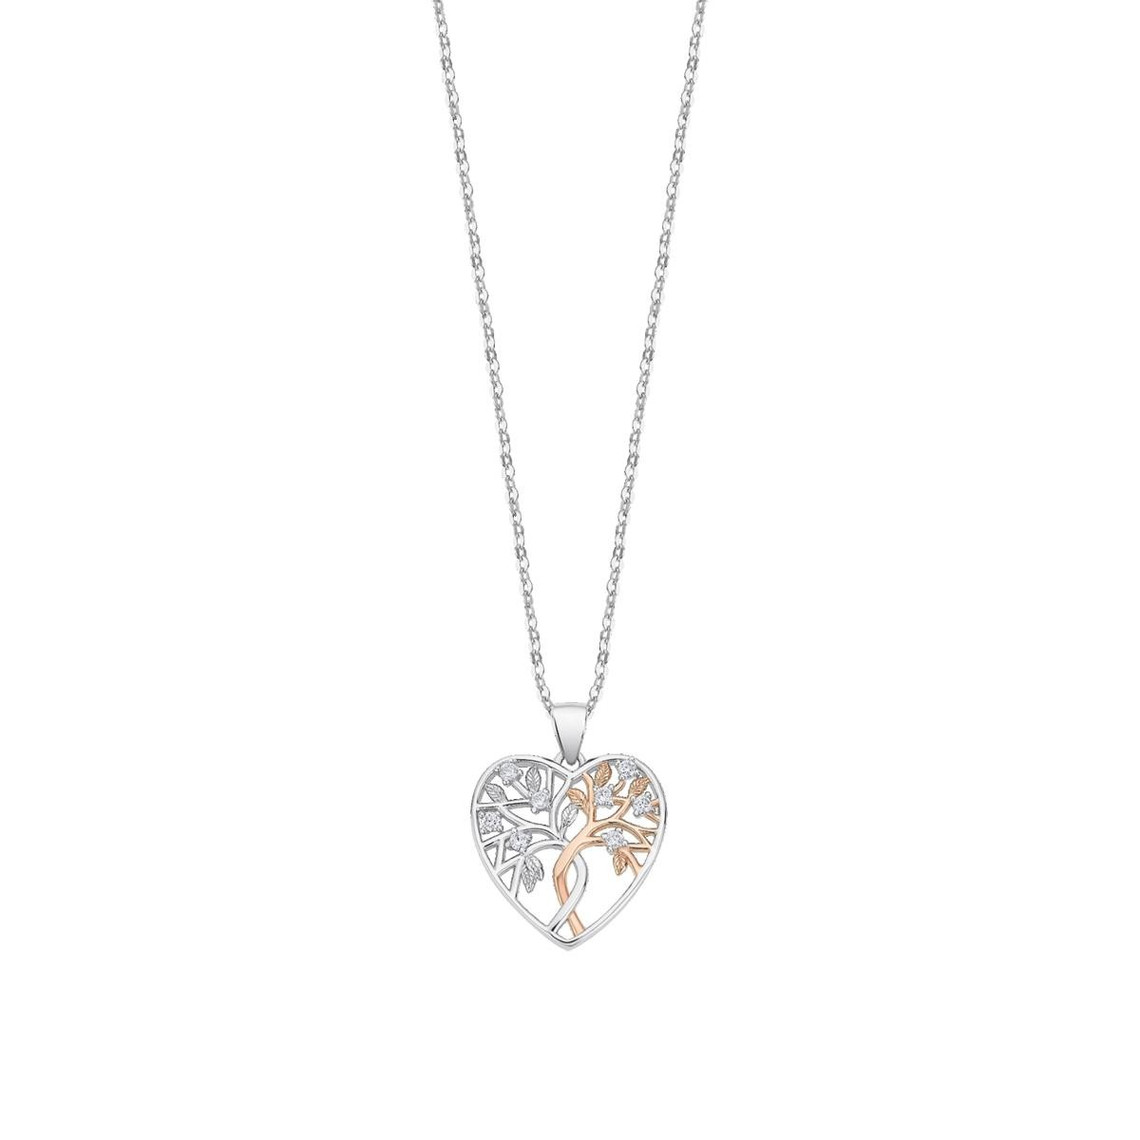 collier et pendentif femme lotus silver lp3304-1-1